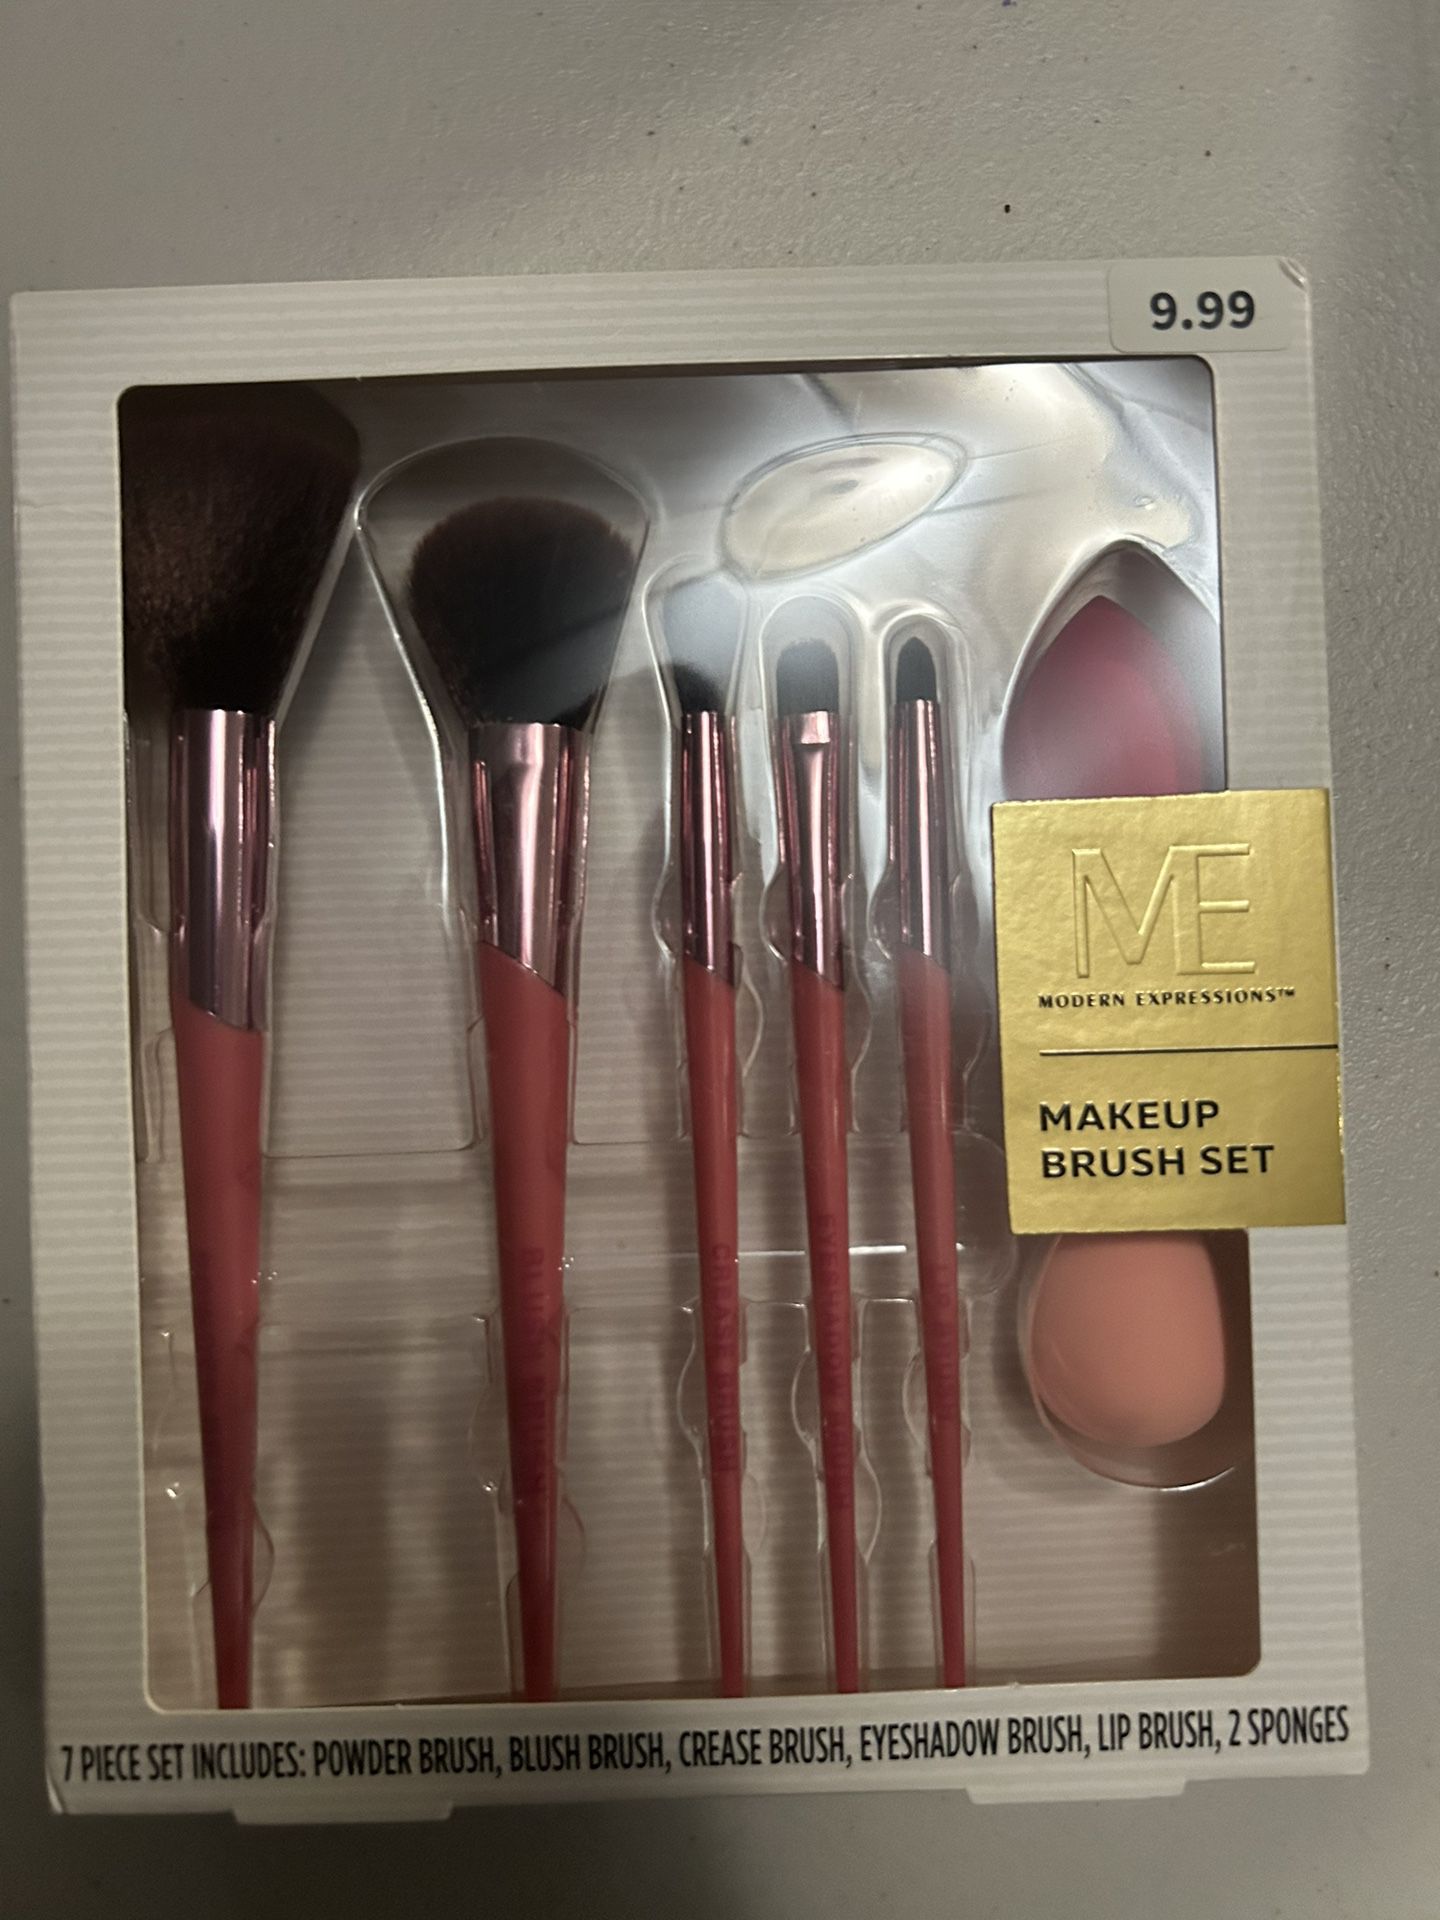 ME Makeup Brush Set